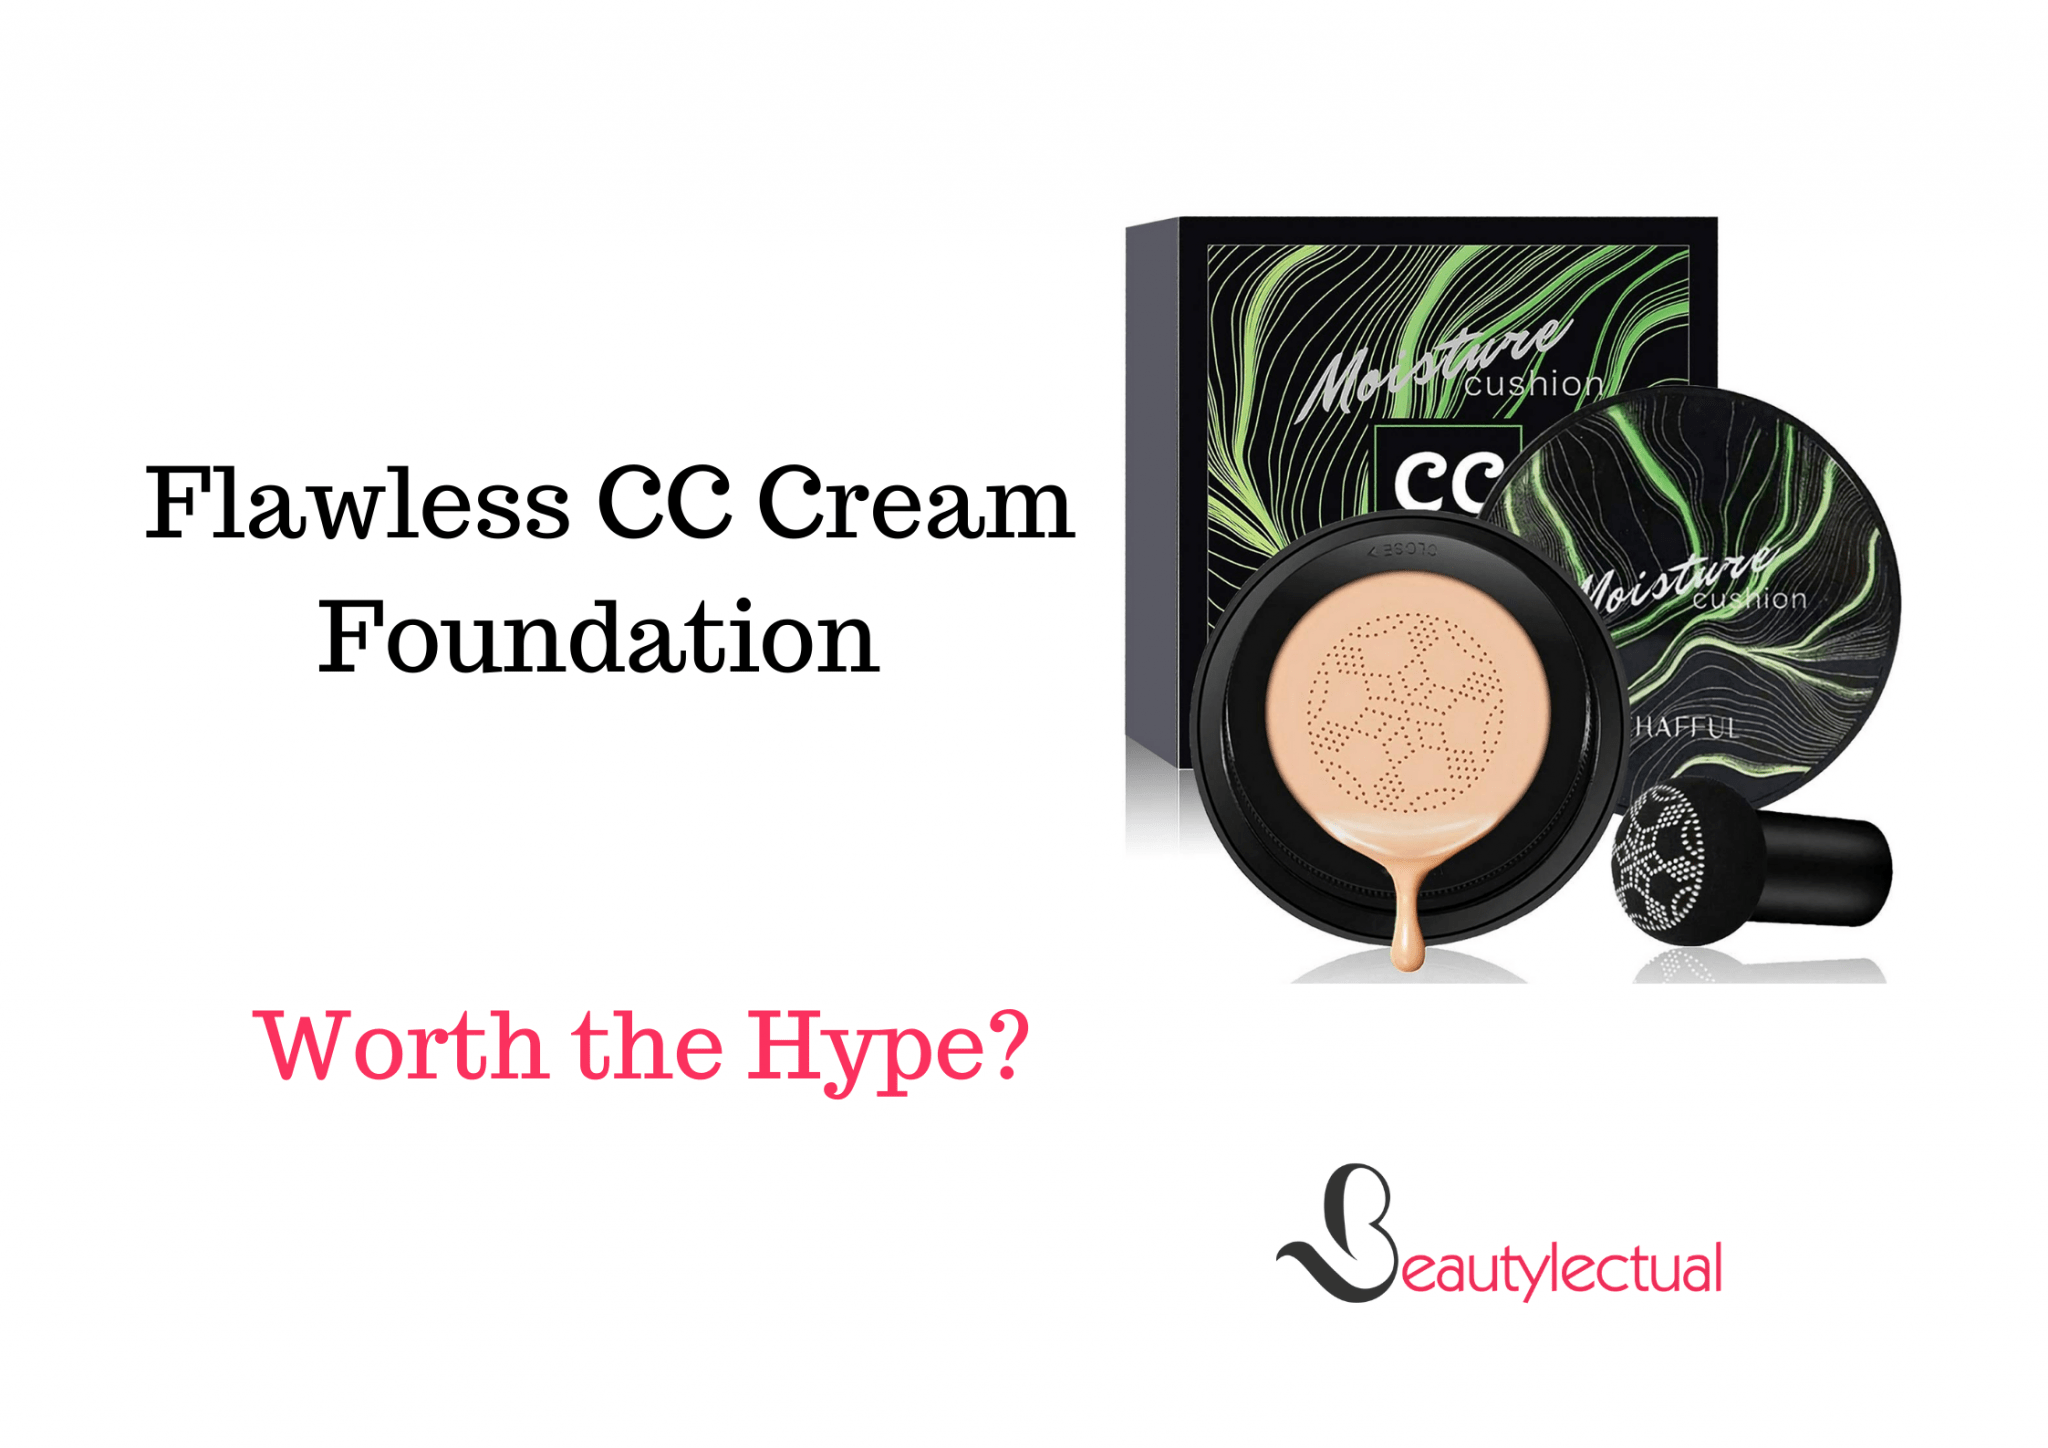 cc cream foundation